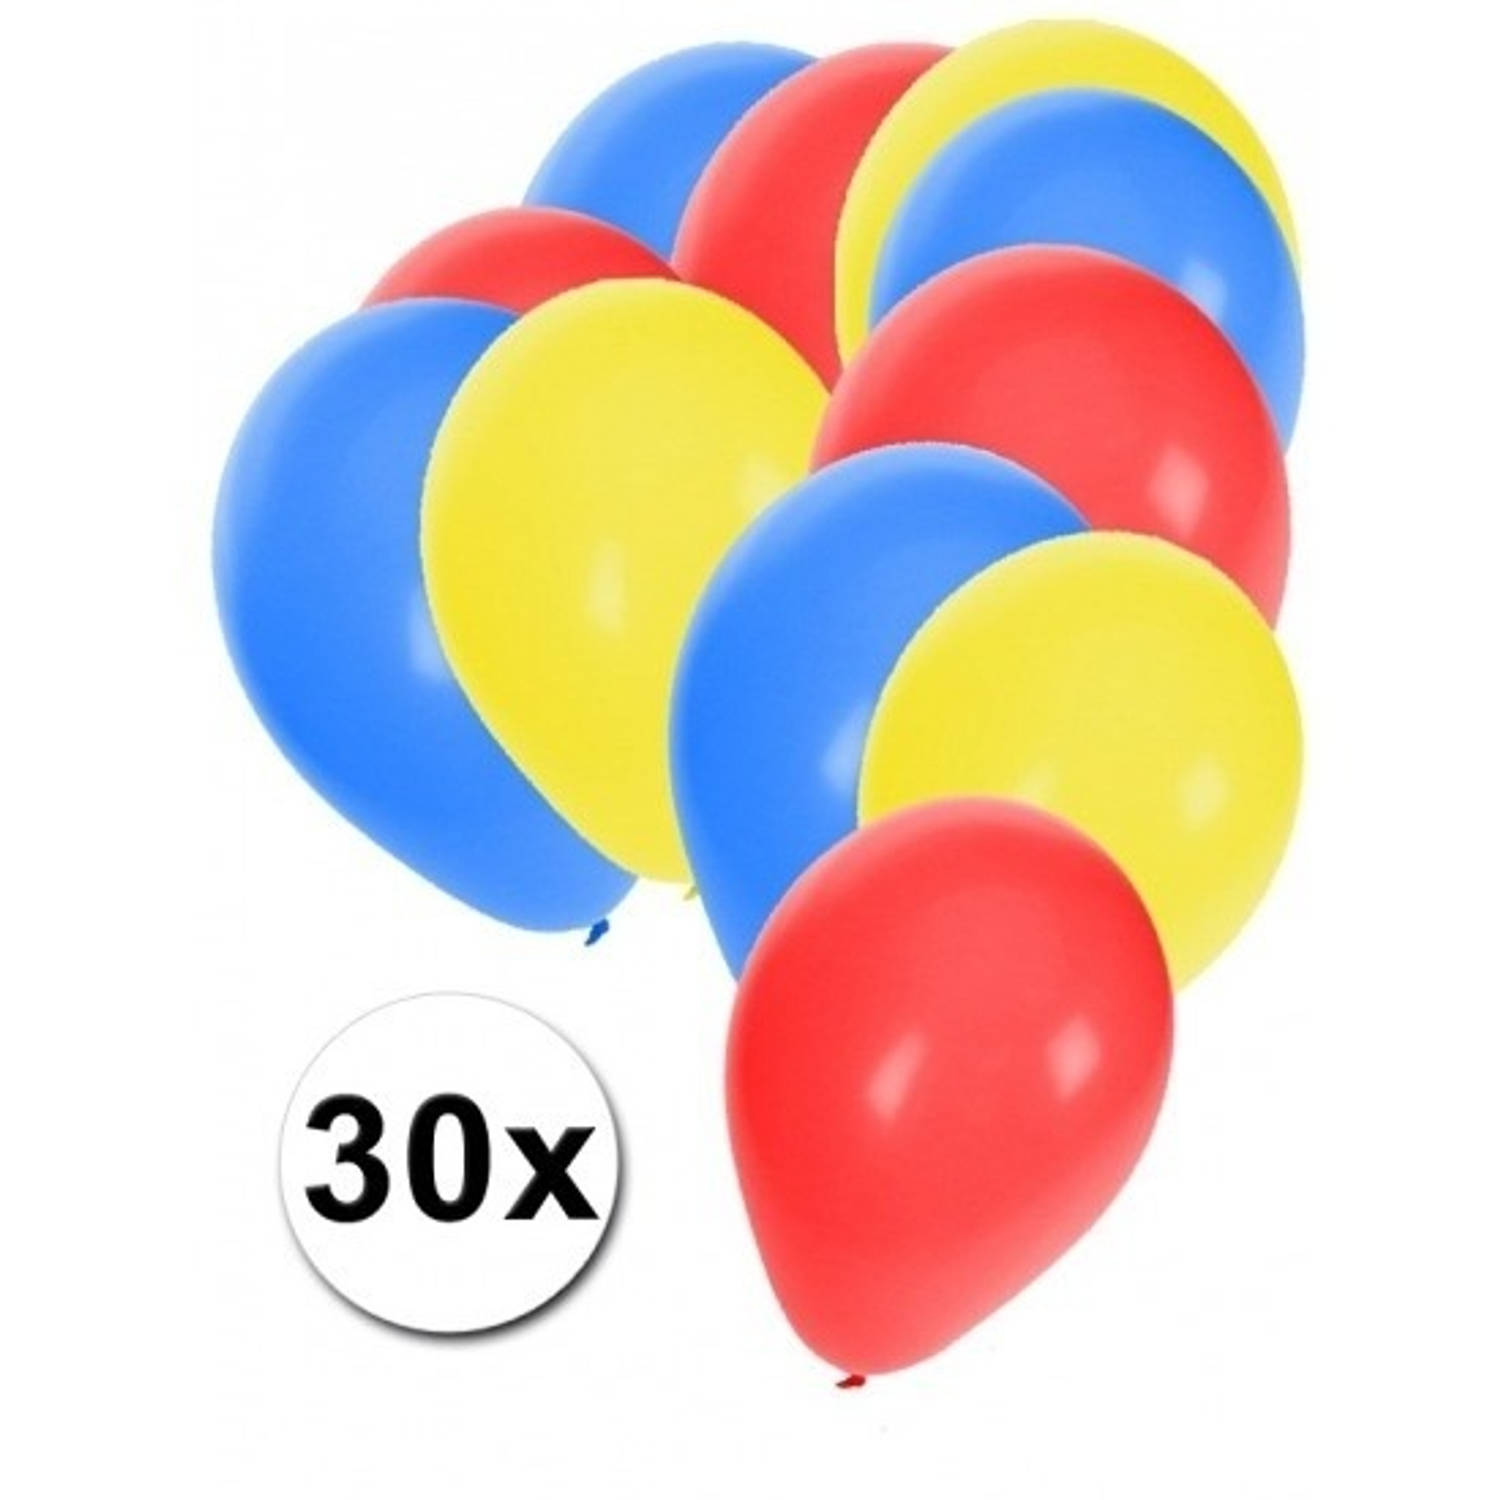 Concreet Reiziger Diakritisch Ballonnen blauw rood en geel - Ballonnen | Blokker